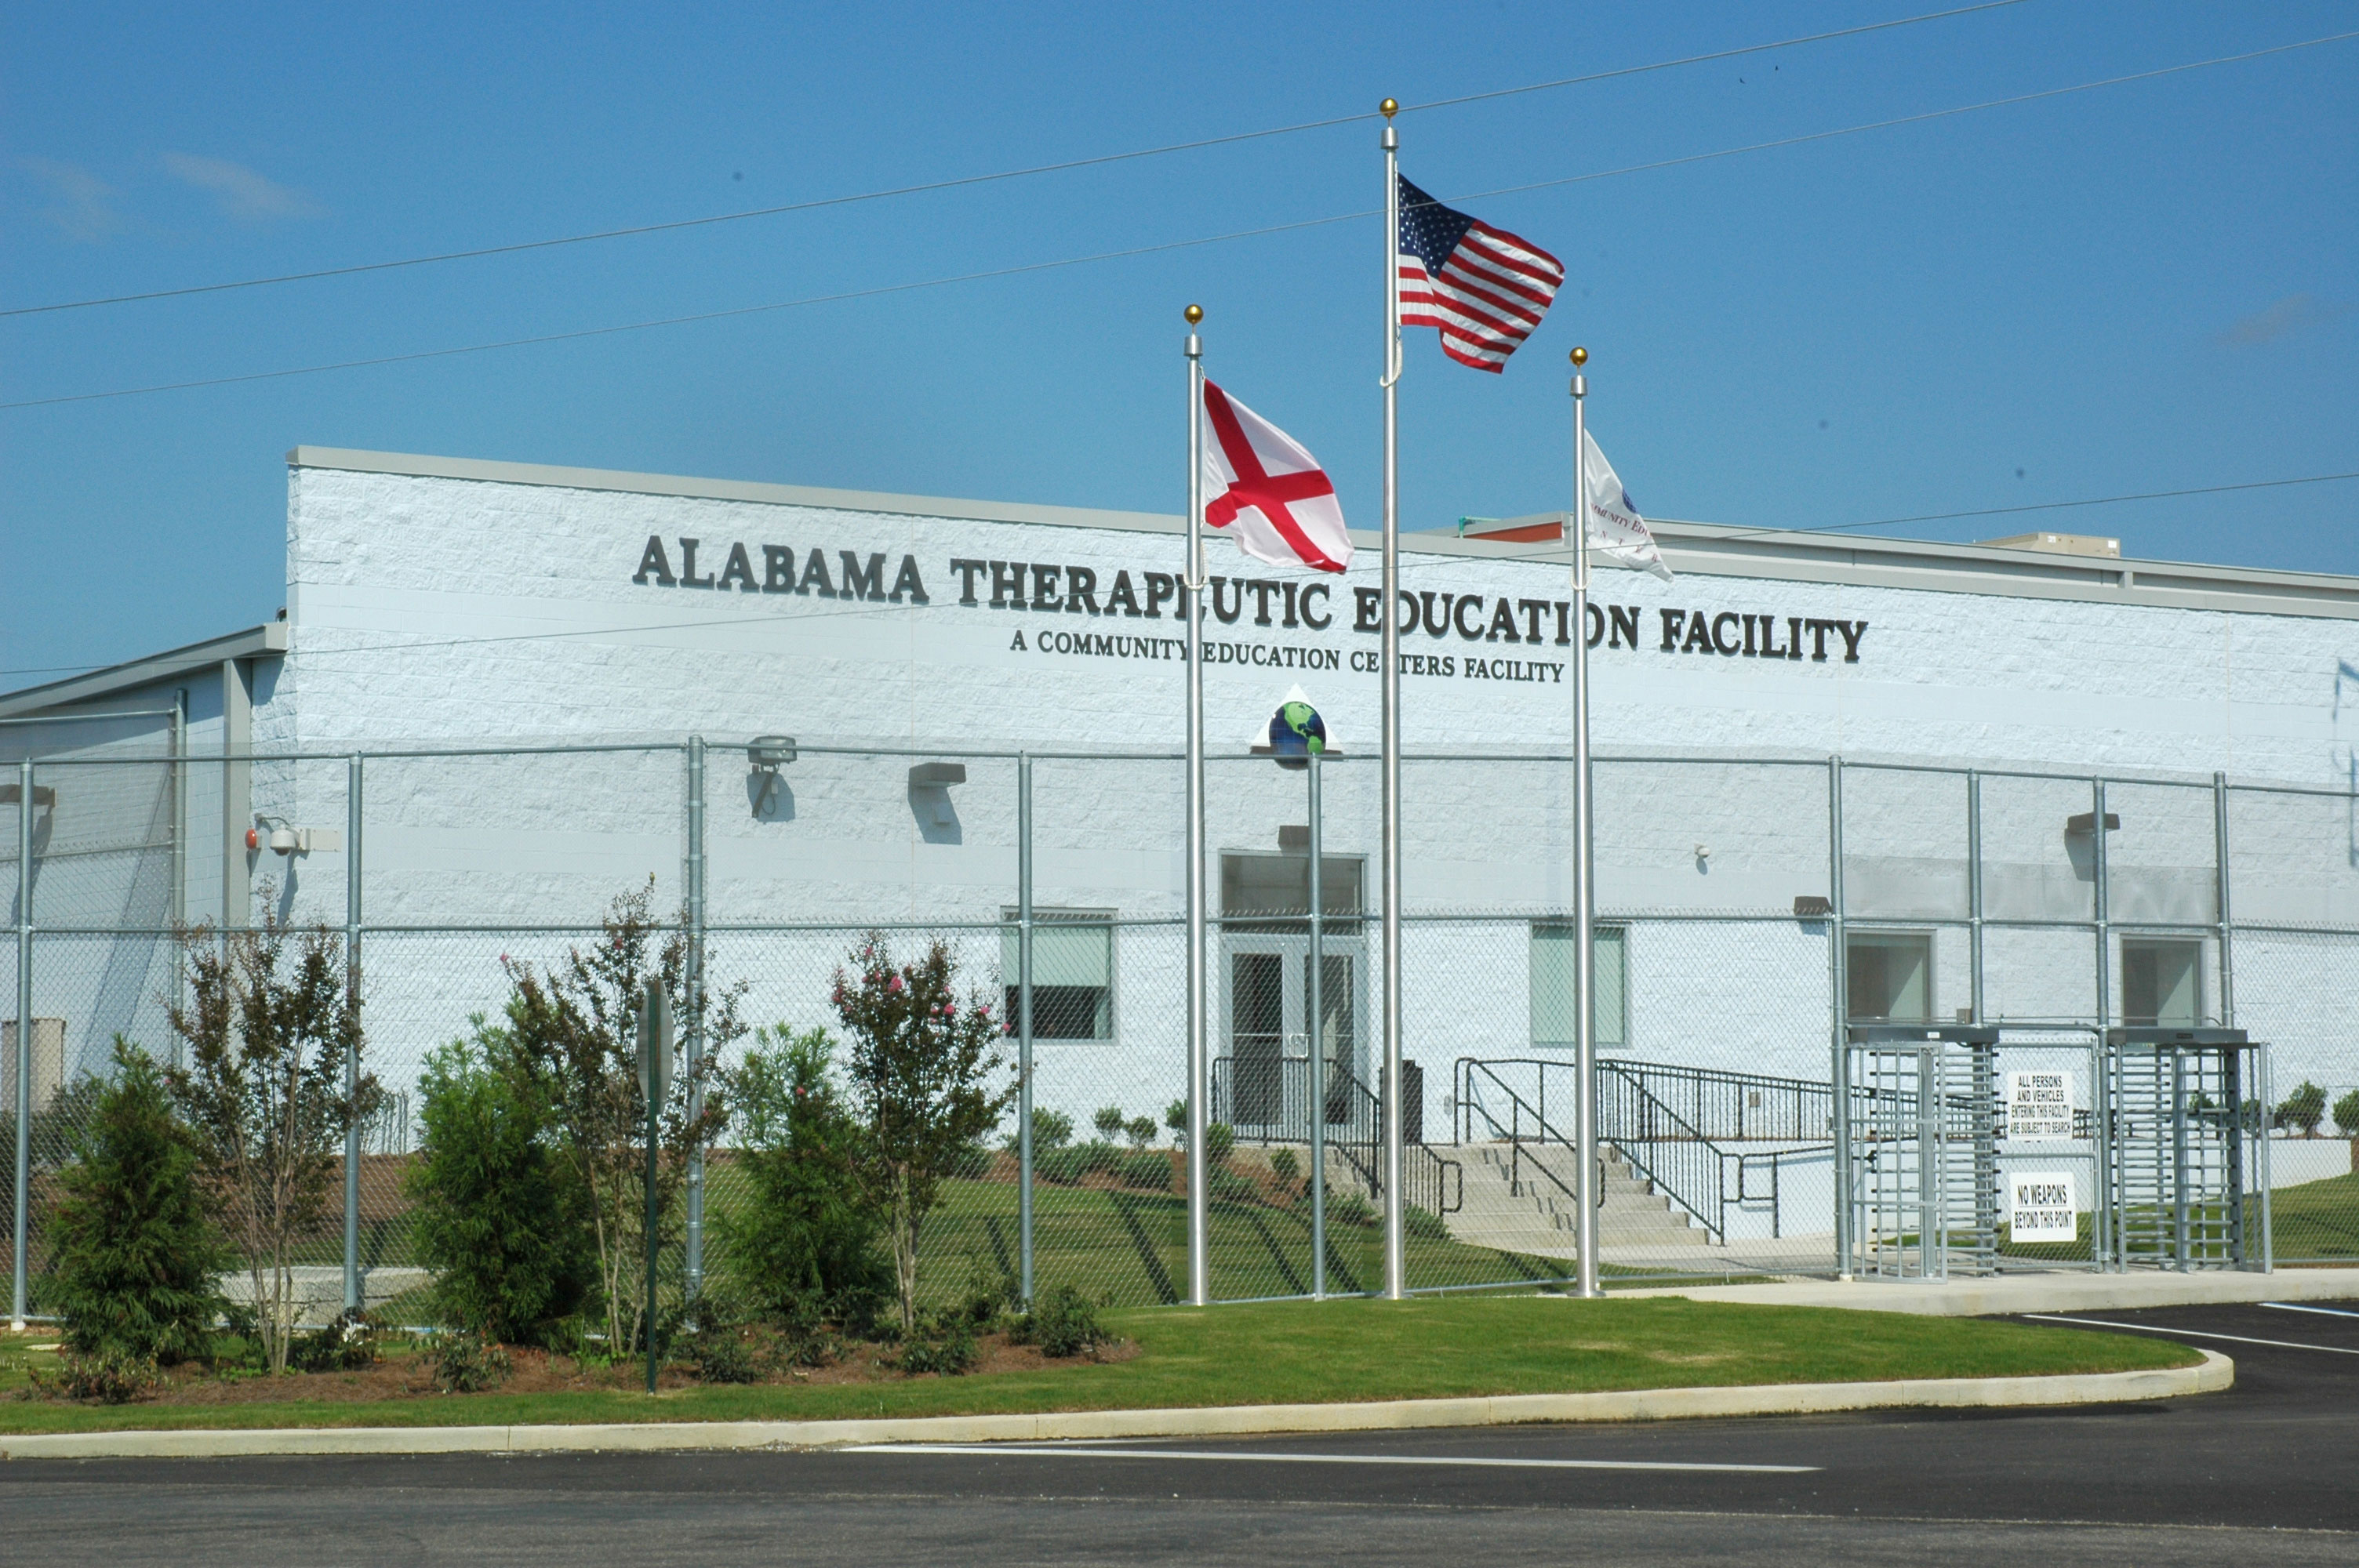 Alabama Therapeutic Education Facility